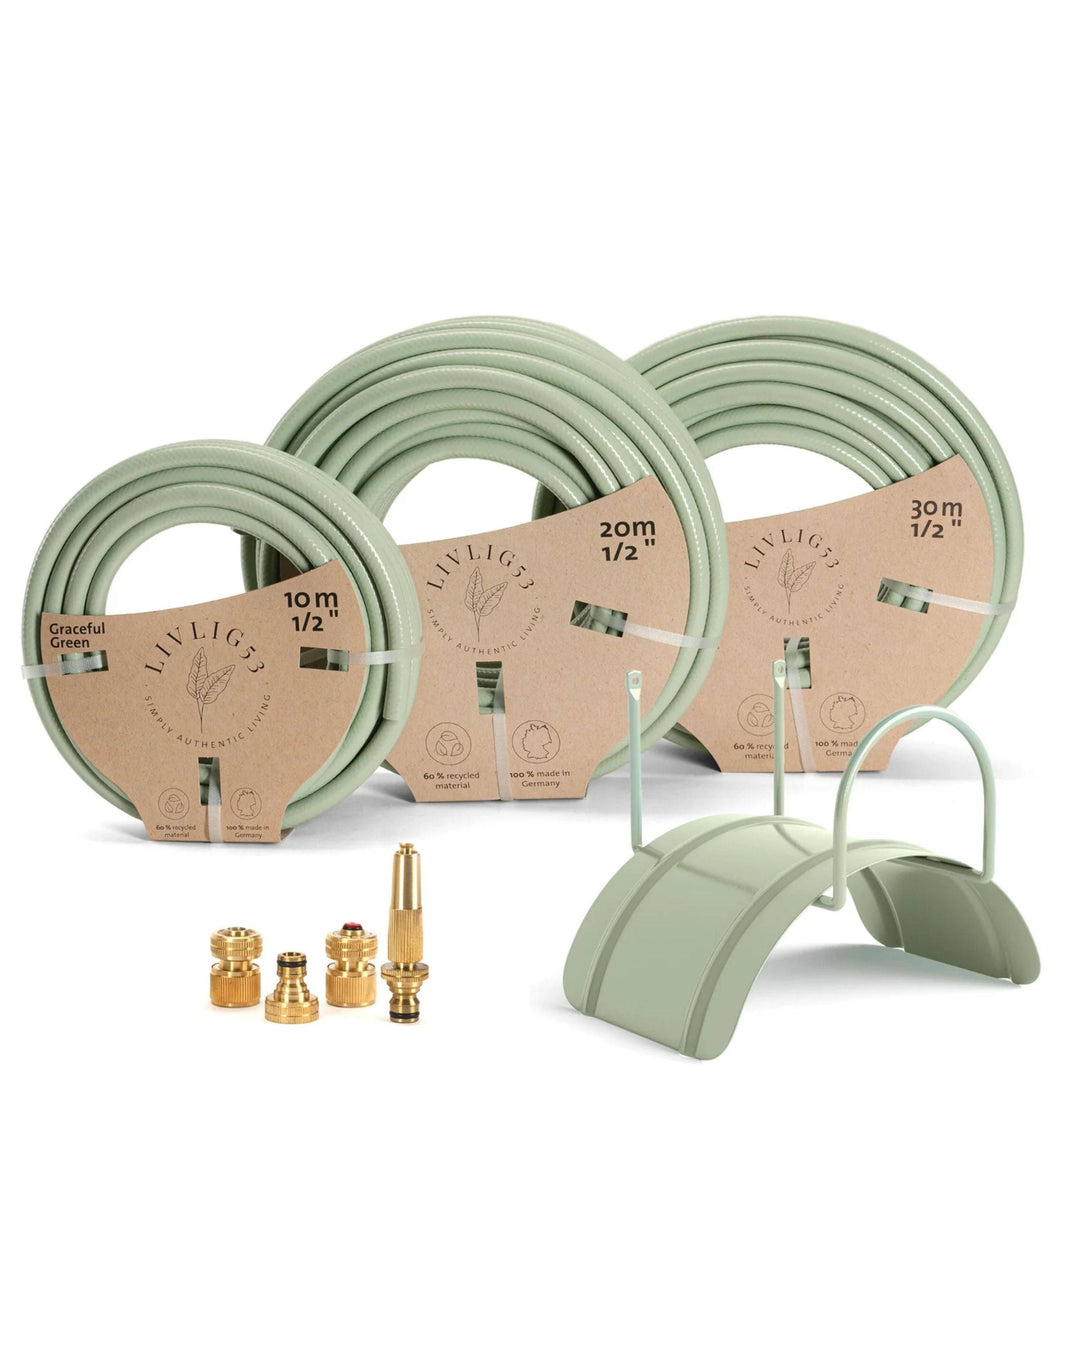 a set of three hoses and a hose holder